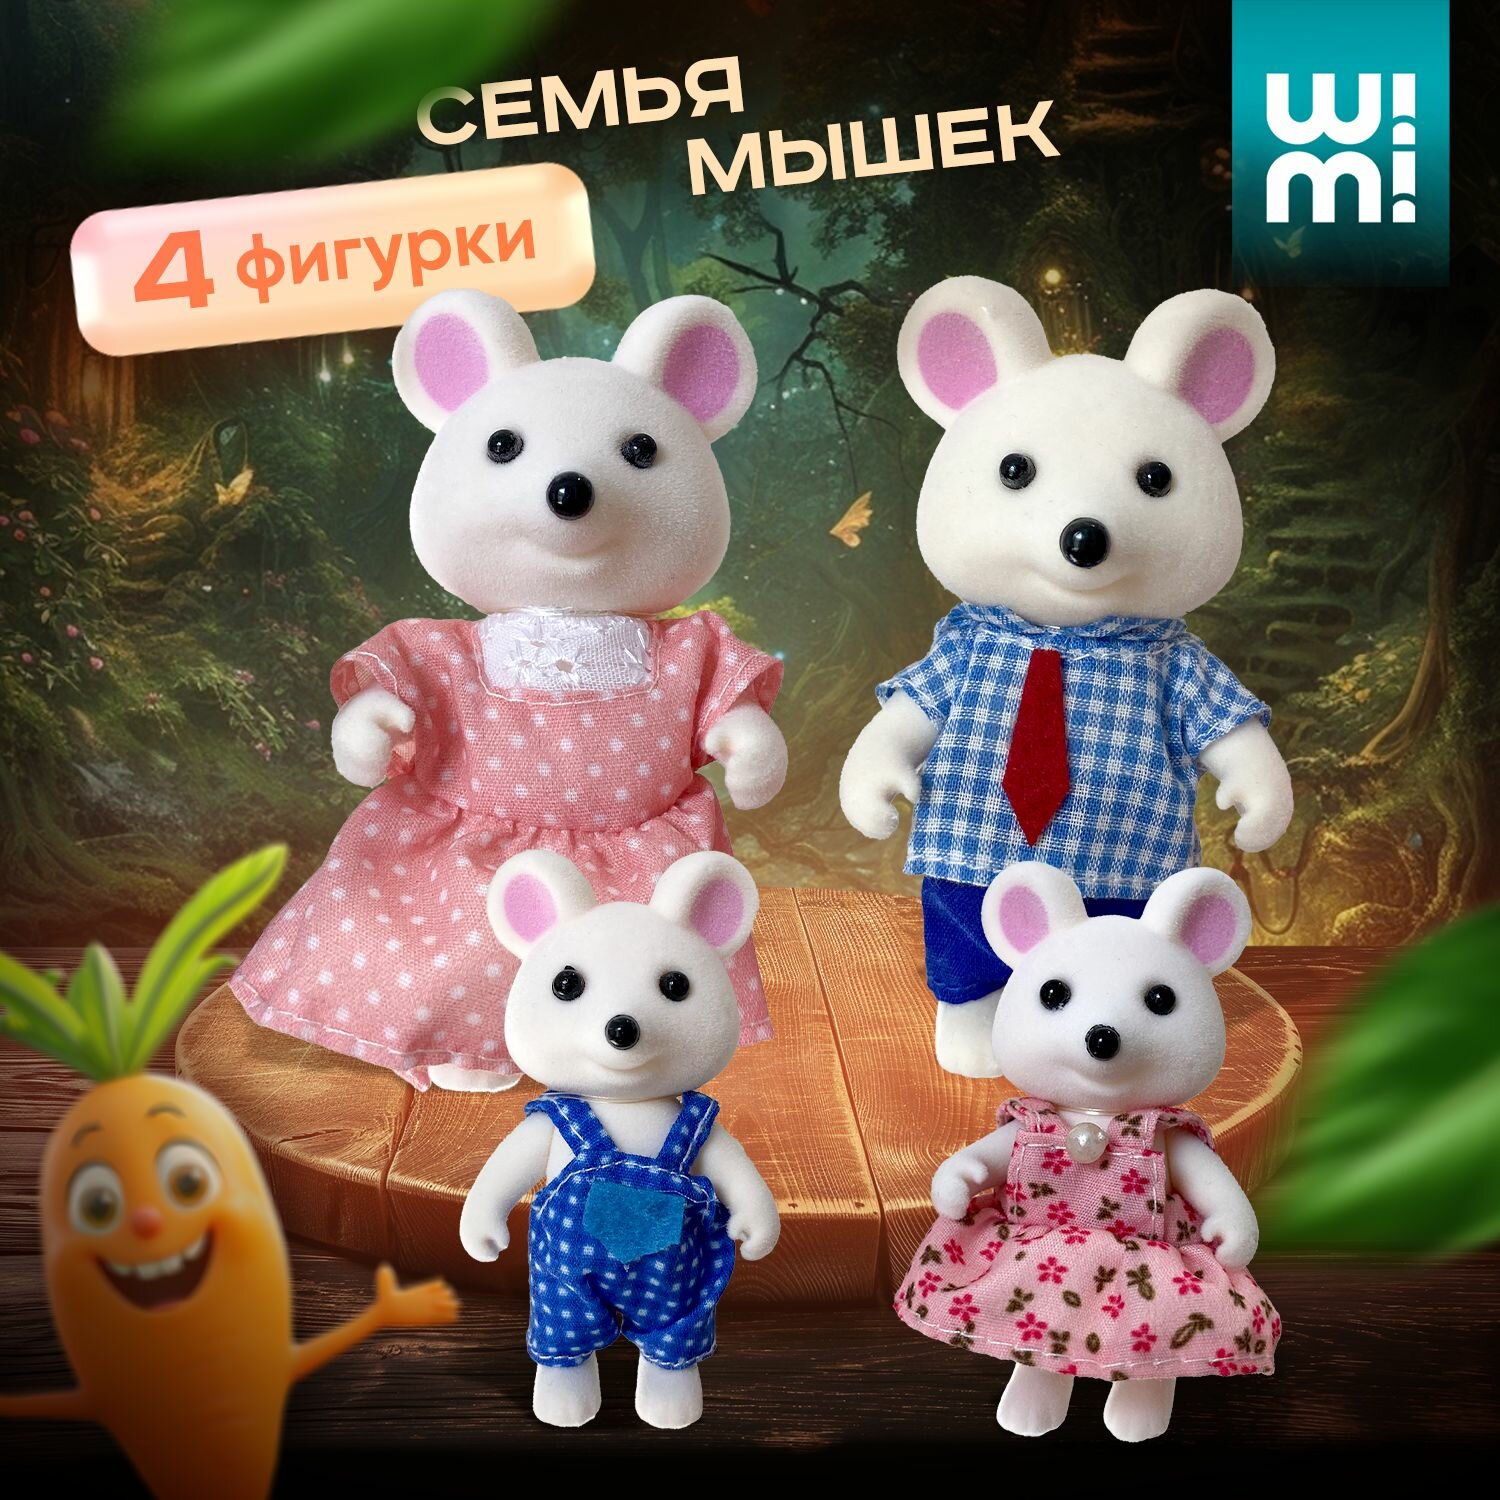 Фигурки животных WiMi, игровой набор семья мышей для кукольного домика